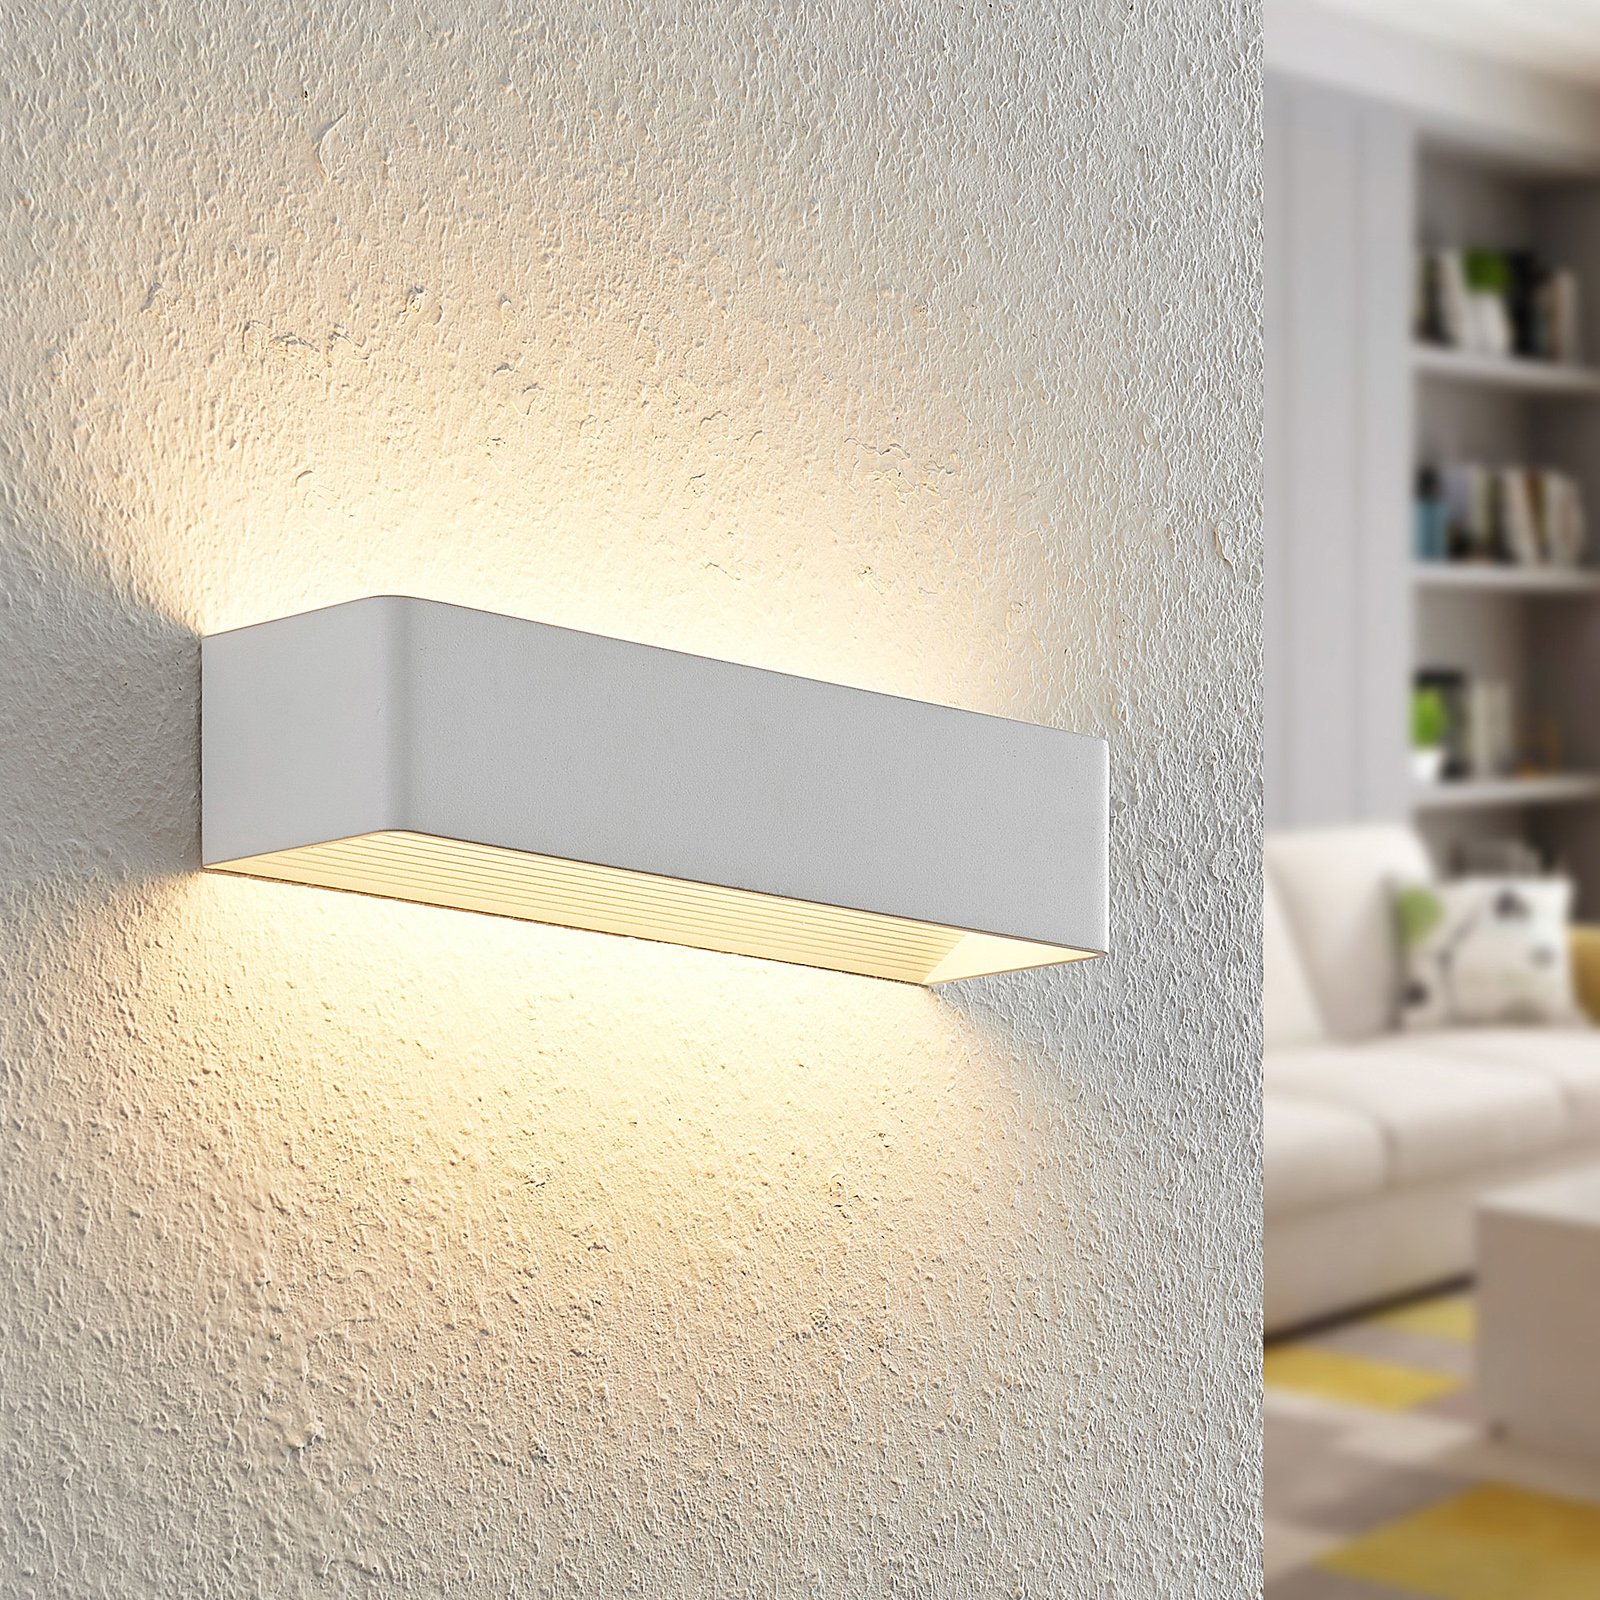 Arcchio Karam applique LED, 36,5 cm, bianco